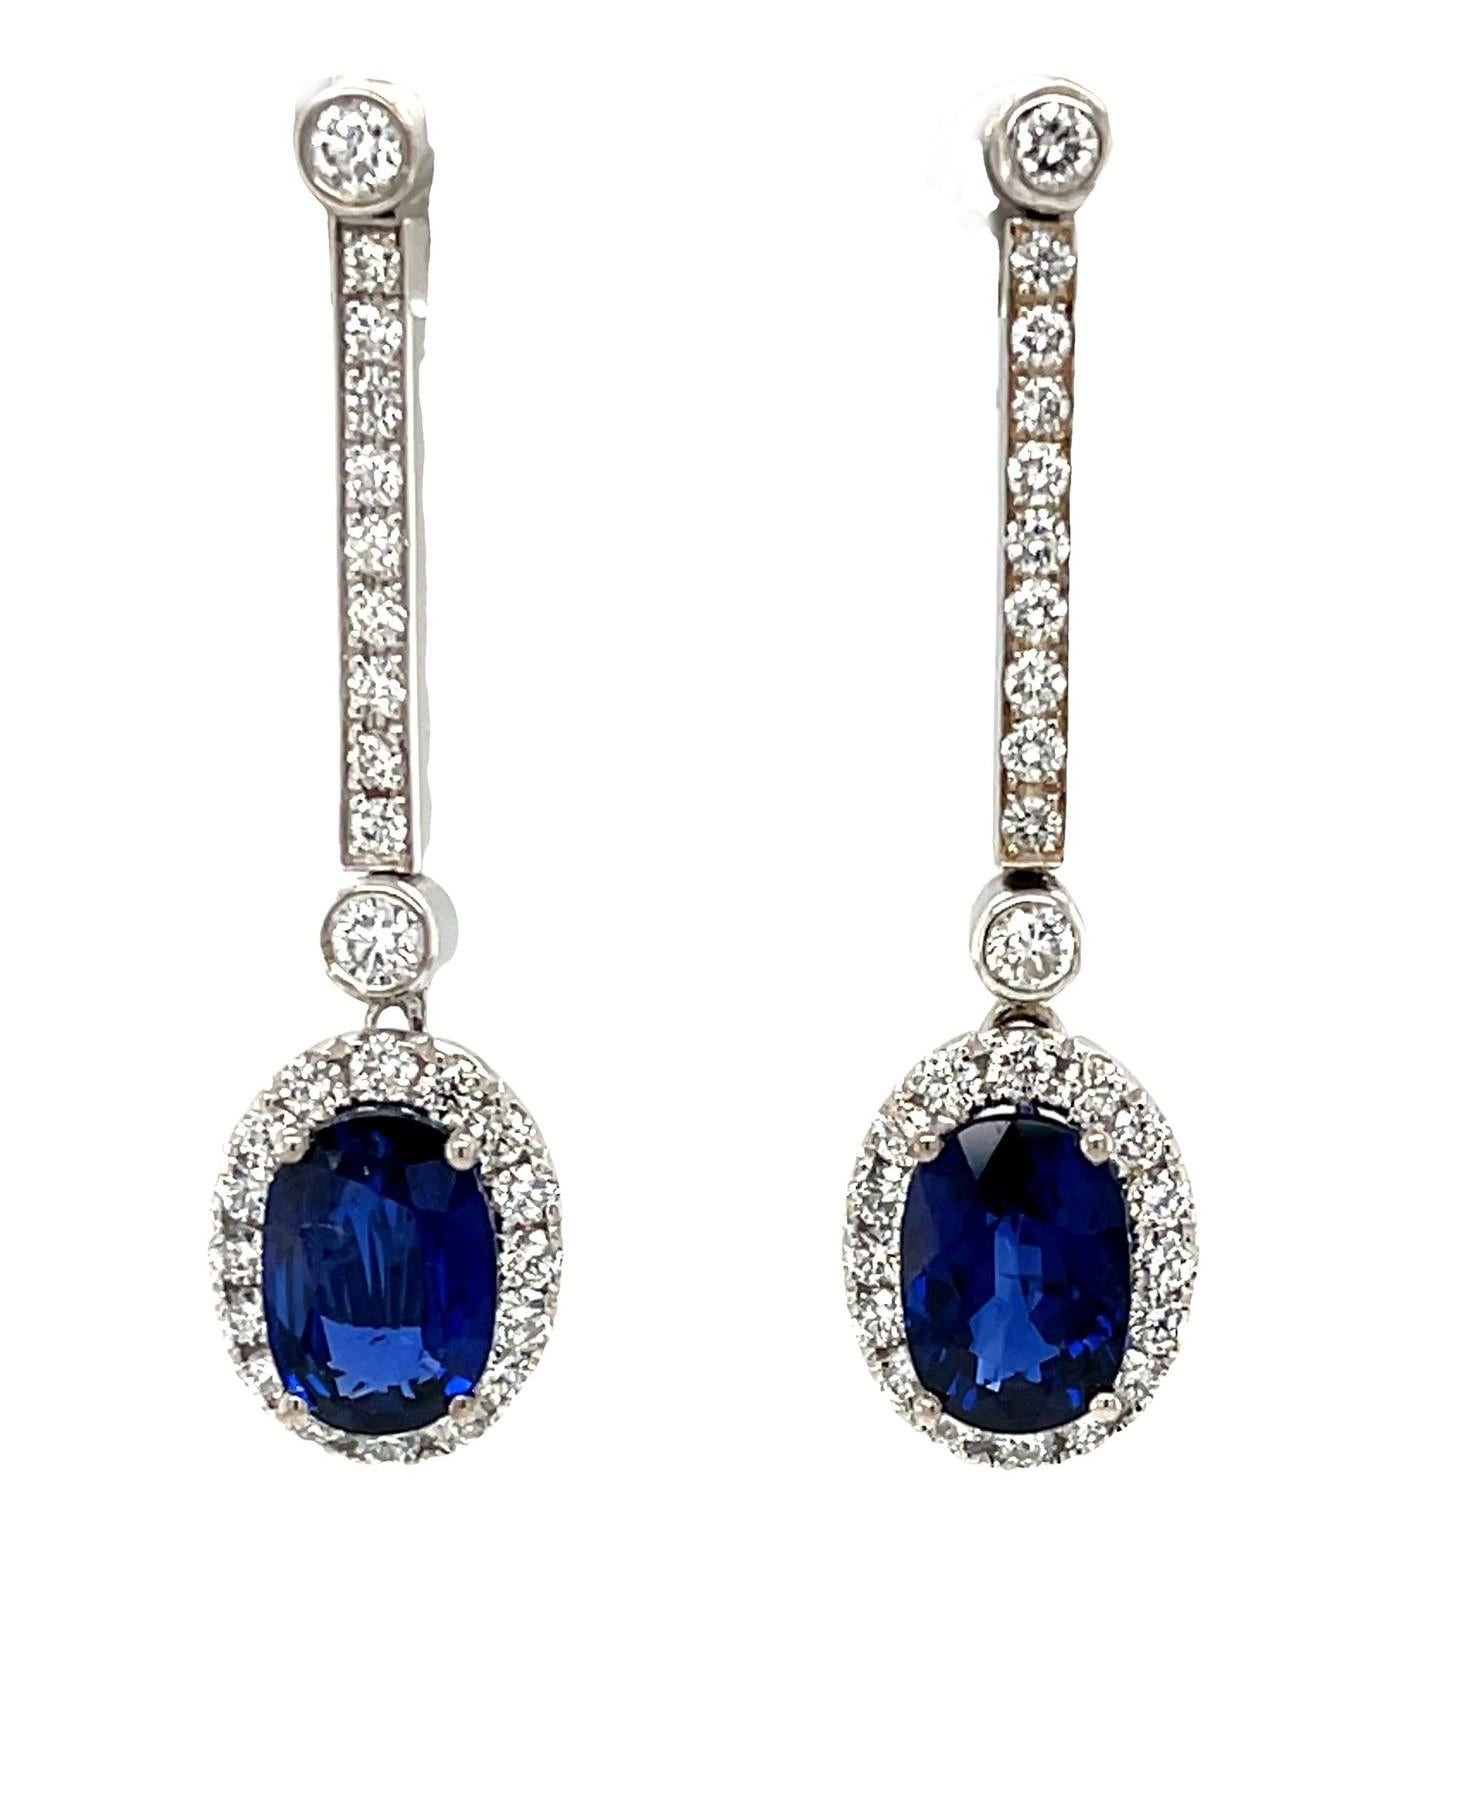 Diese atemberaubenden und vielseitigen Ohrringe sind mit brillanten Saphiren und Diamanten besetzt, die an einer eleganten Linie aus funkelnden Diamanten hängen! Die perfekt aufeinander abgestimmten ovalen Saphire sind von sehr feiner Qualität und